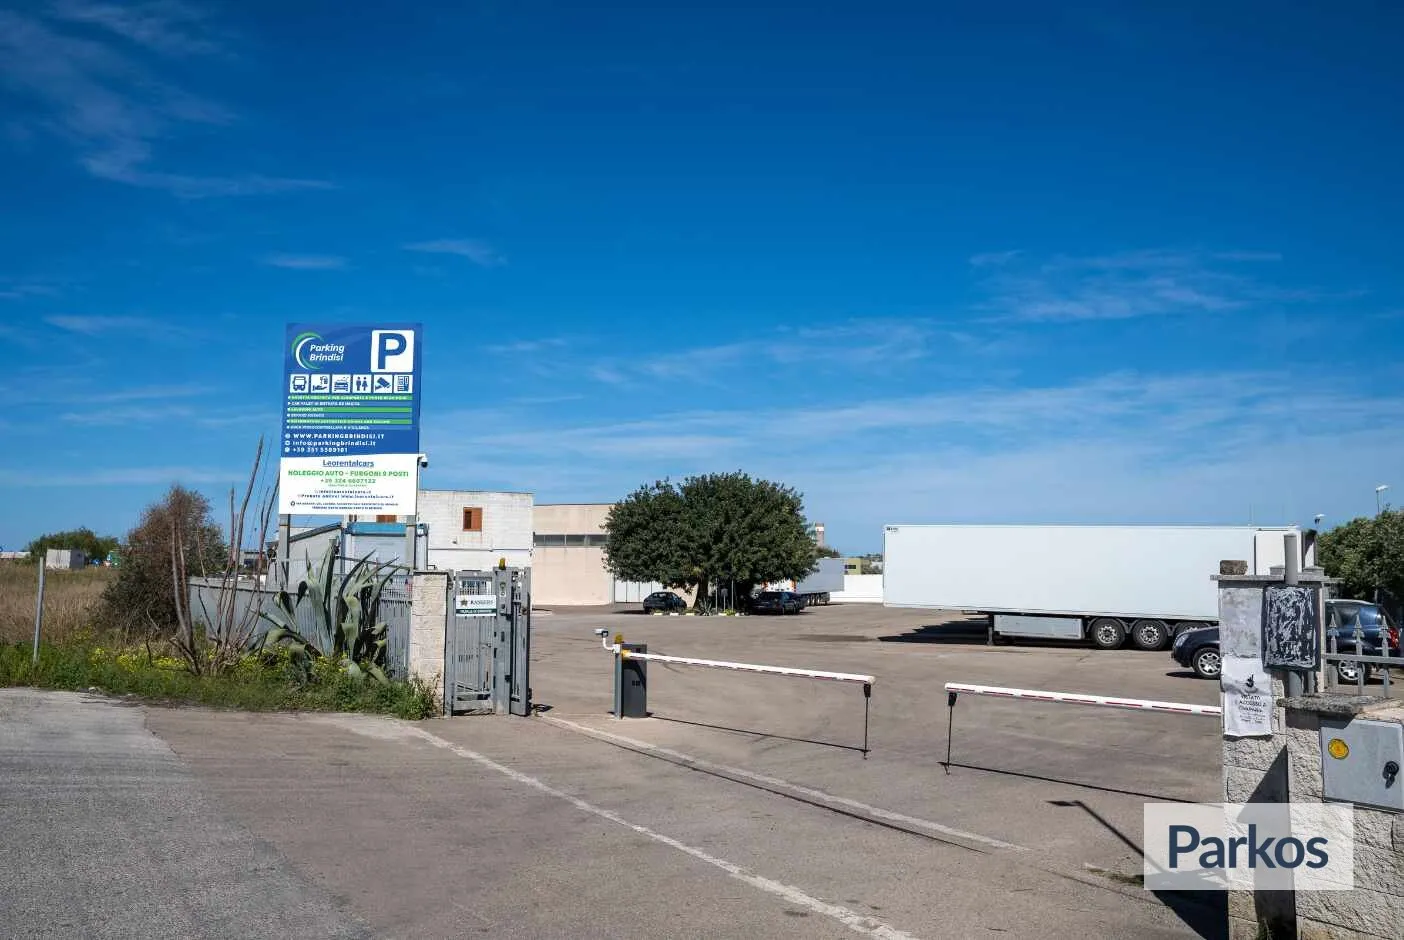 ParkingBrindisi (Paga online) - Parcheggio Aeroporto Brindisi - picture 1